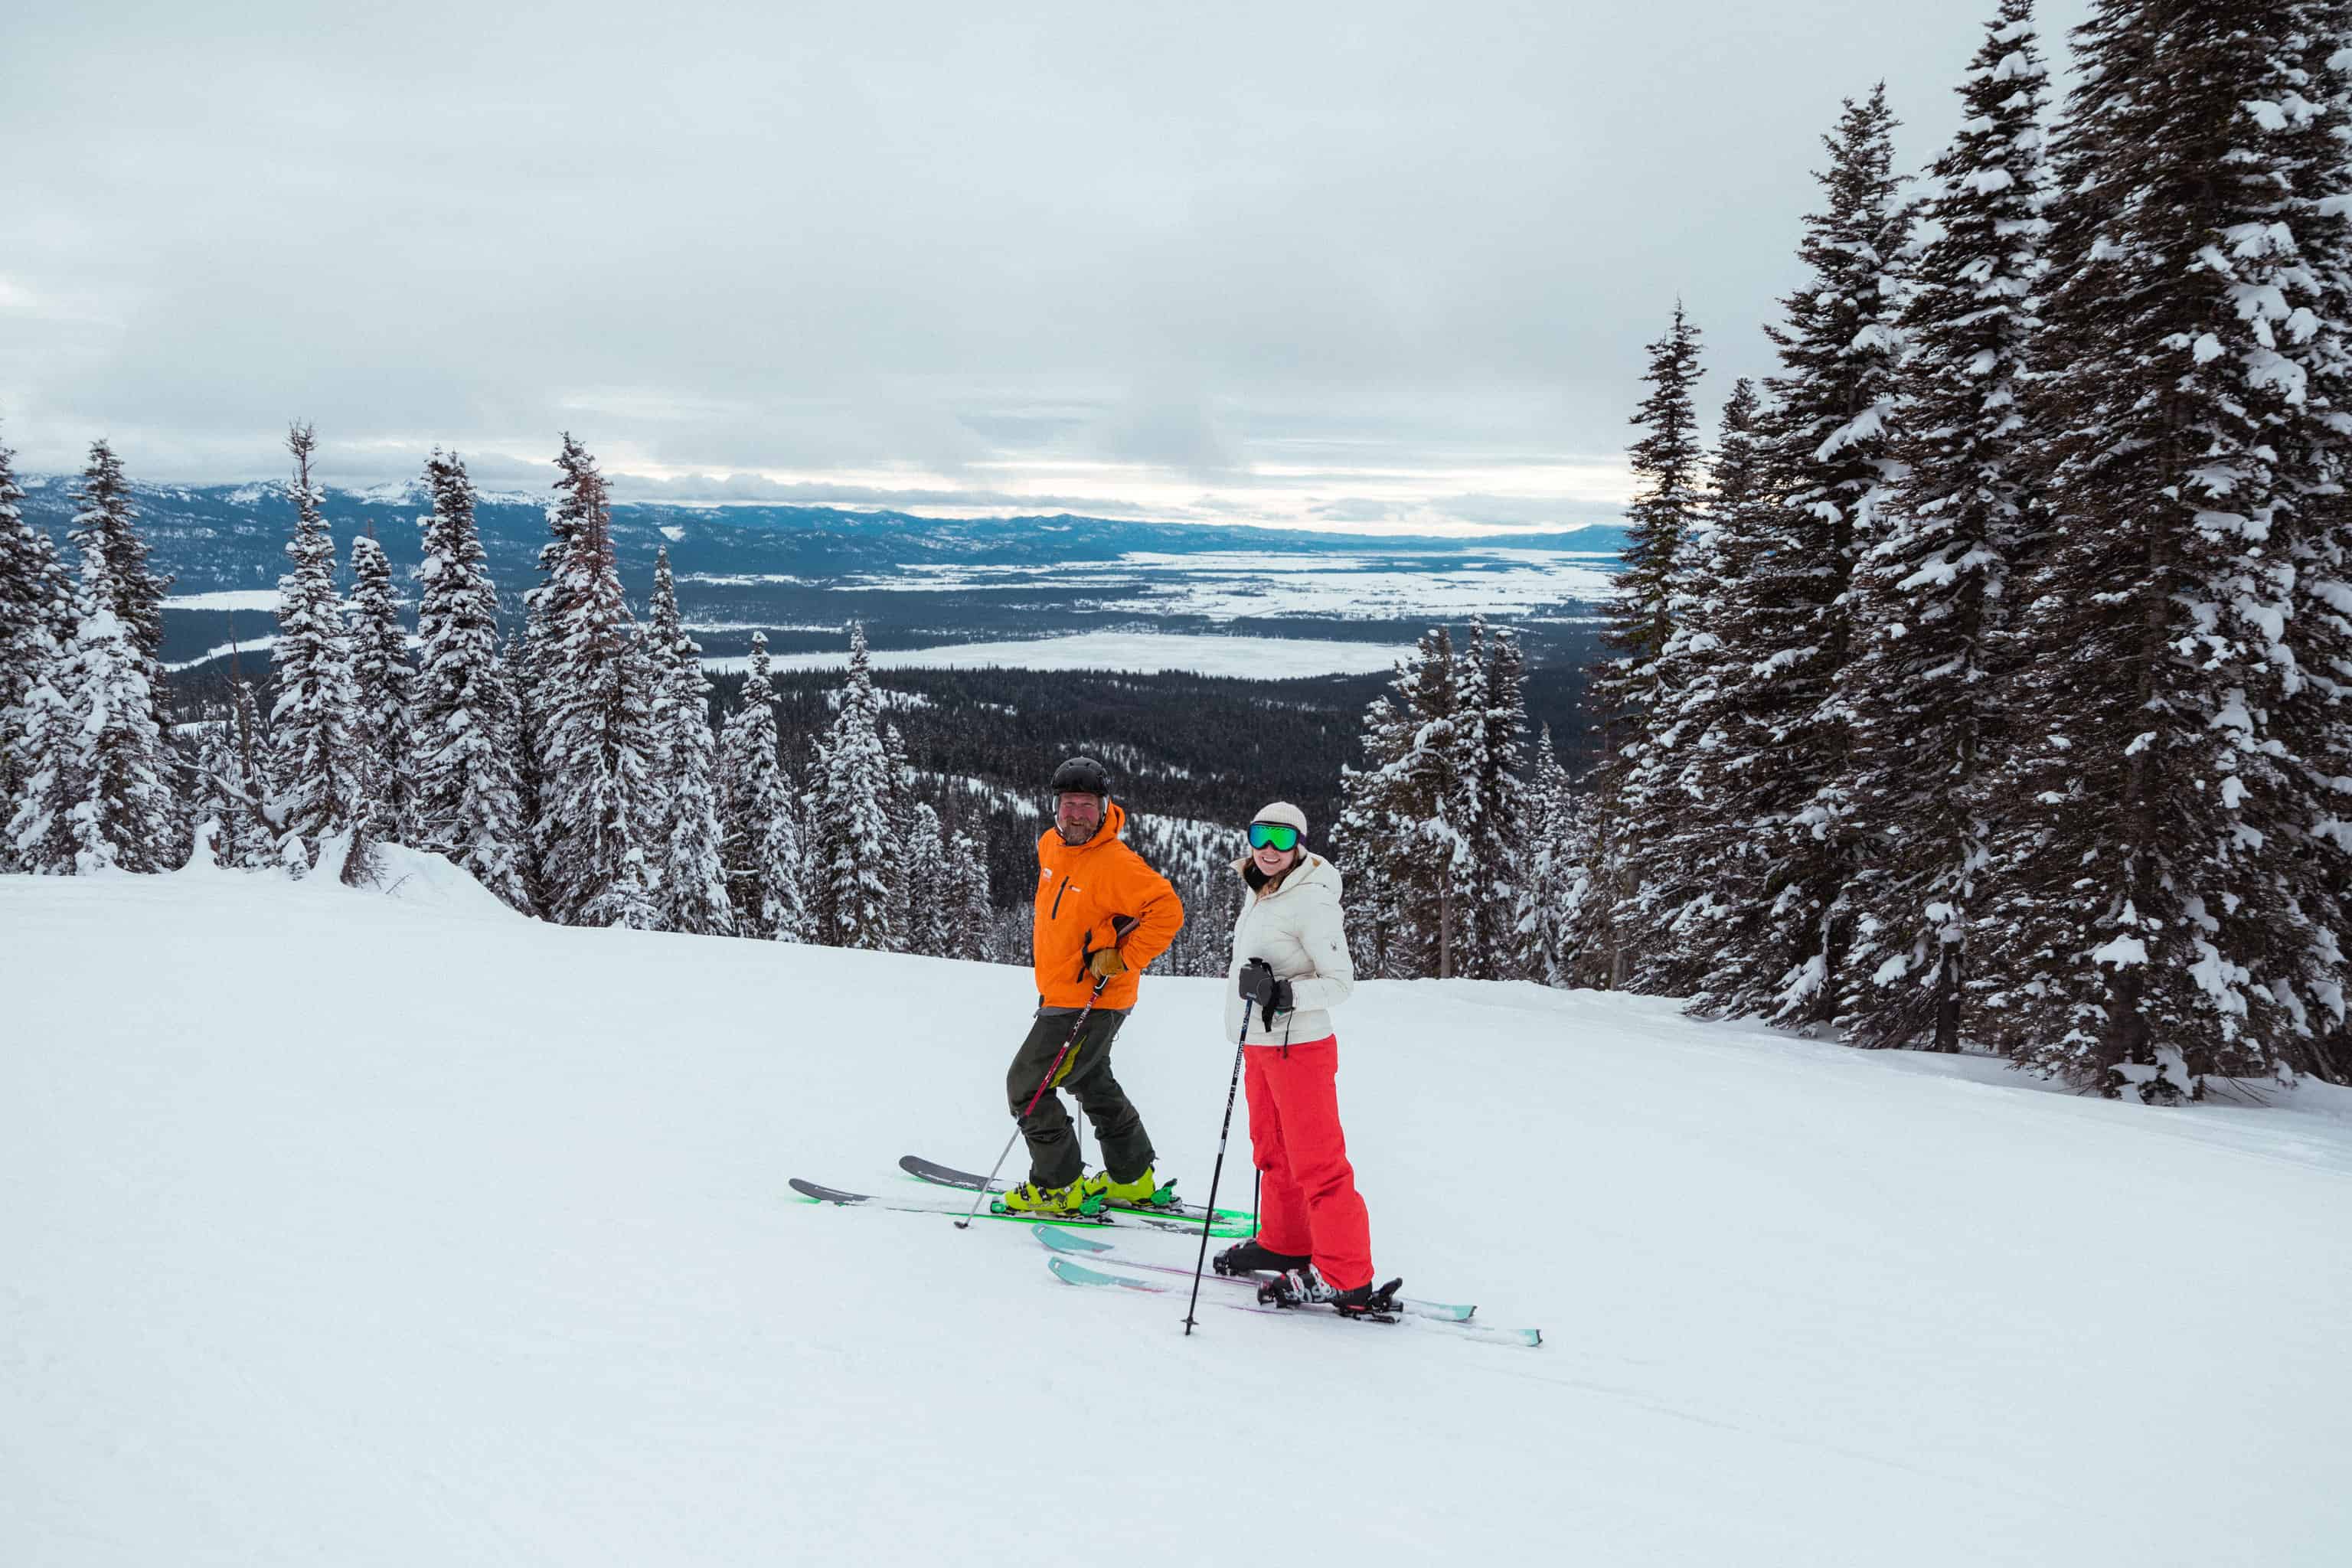 Things To Do In Idaho - Ski on Brundage Mountain